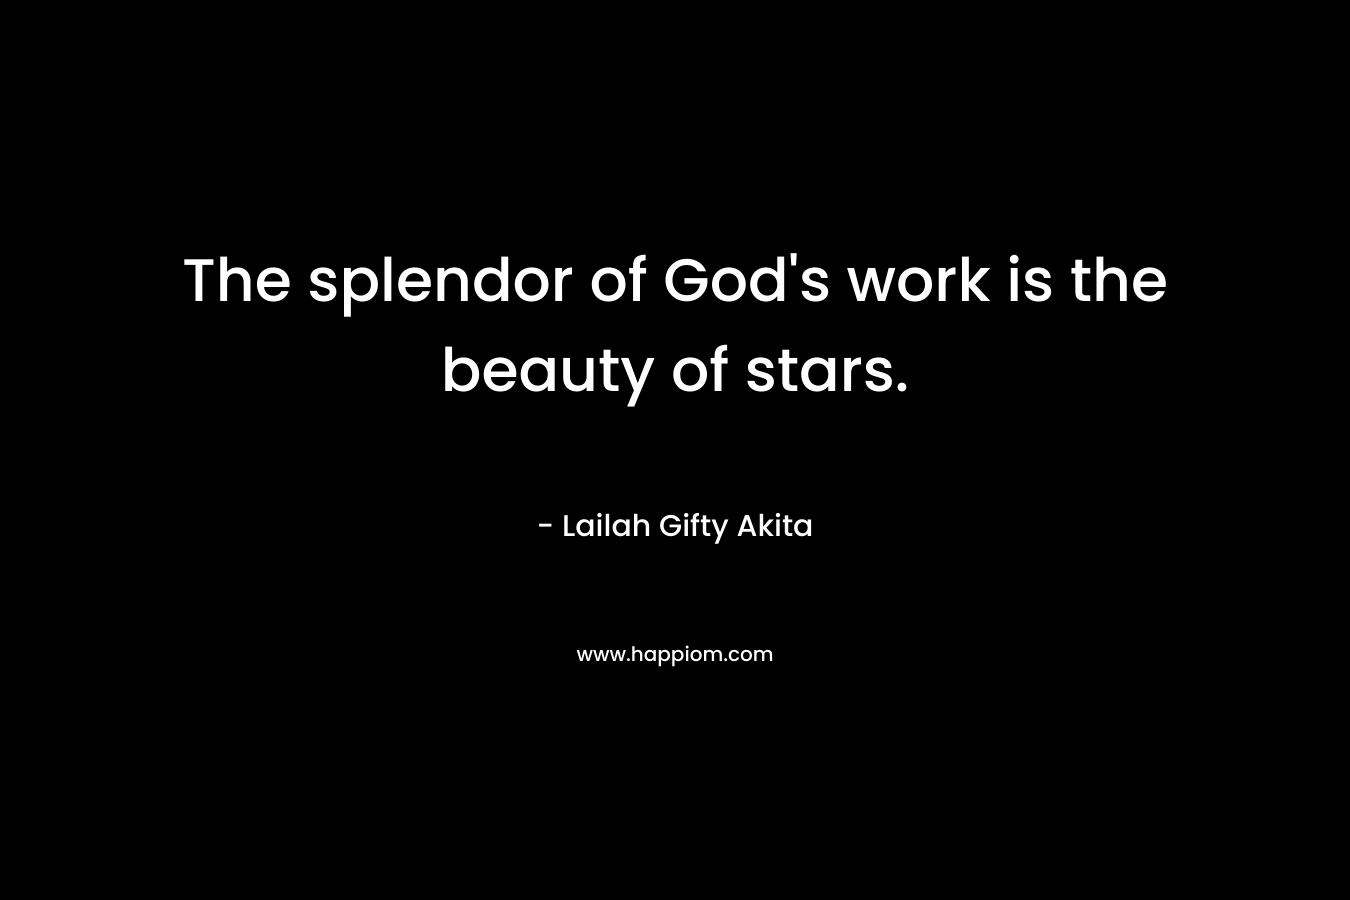 The splendor of God's work is the beauty of stars.